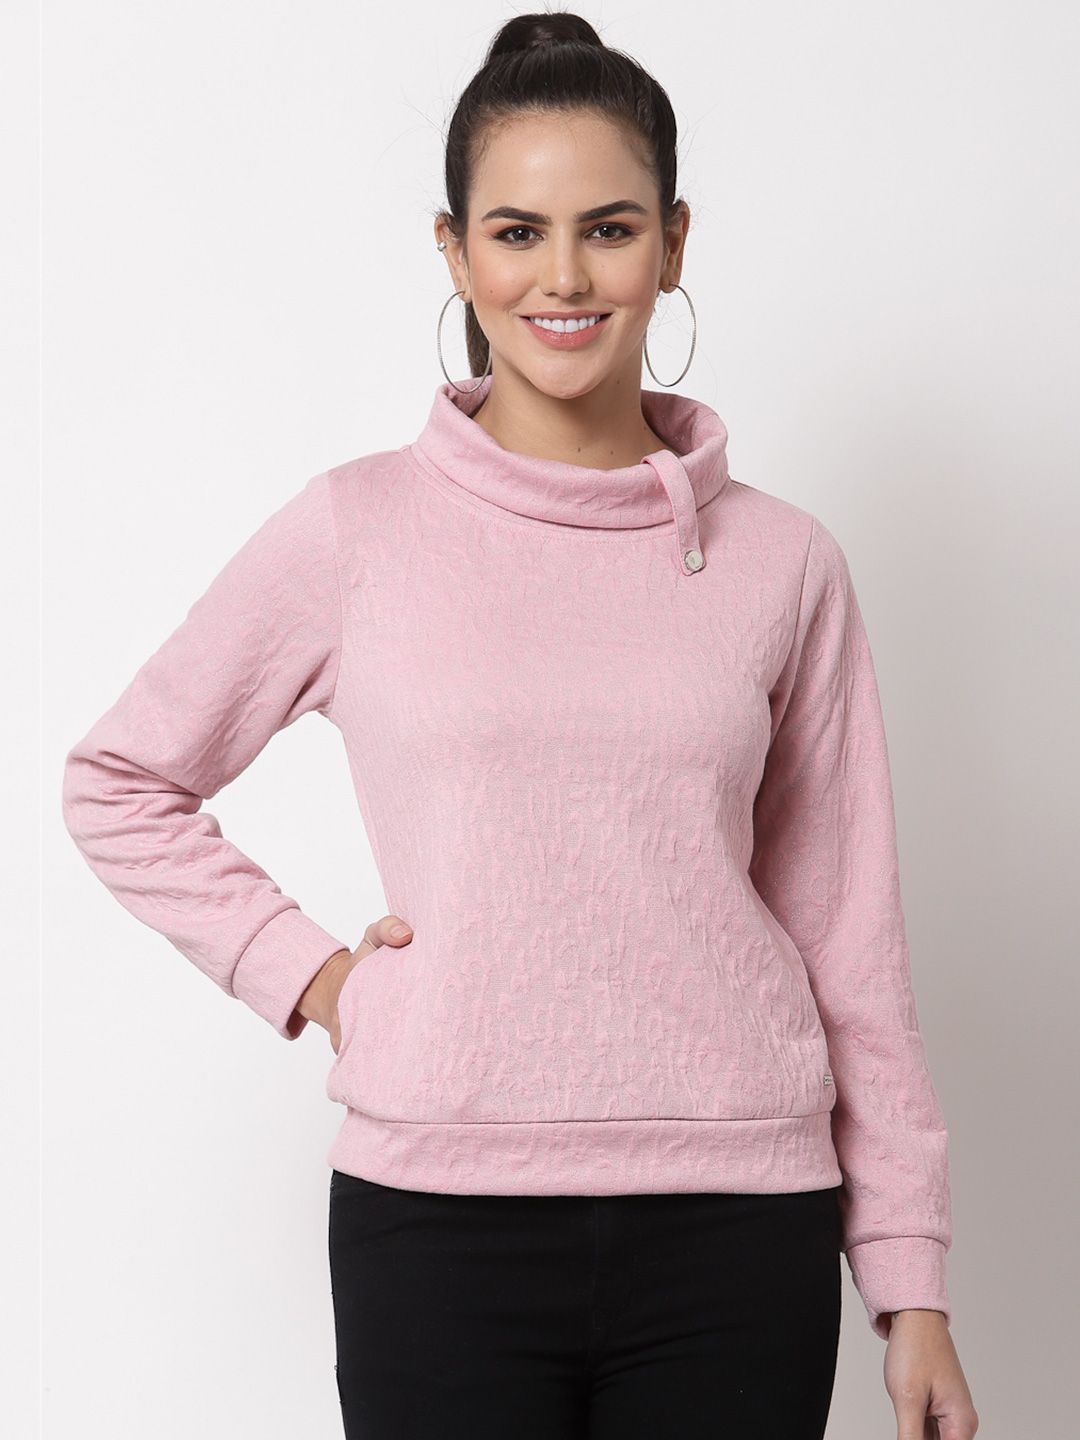 Juelle Women Pink Fleece Sweatshirt Price in India